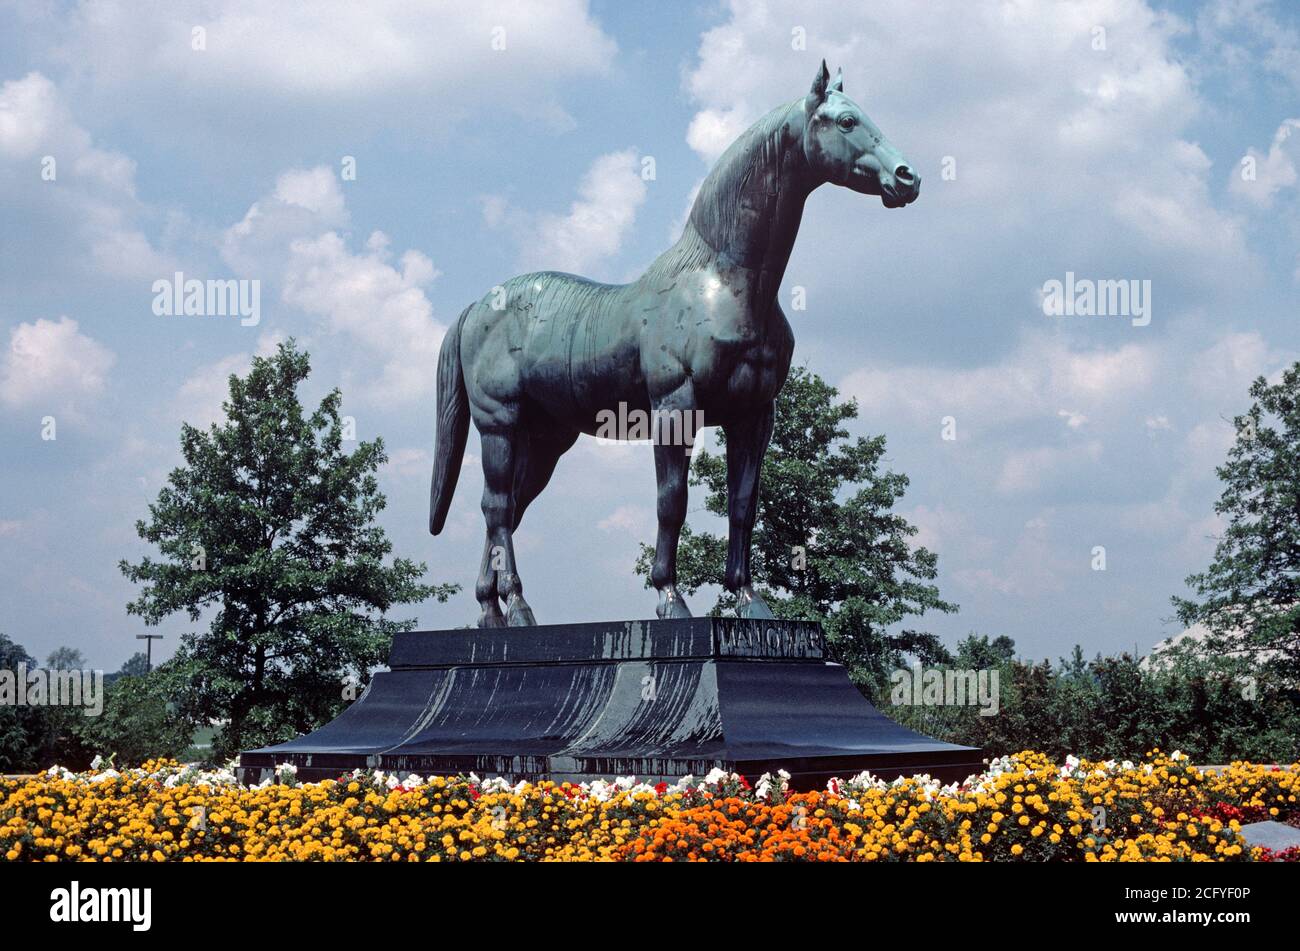 MAN O' WAR RACEHORSE STATUE IN KENTUCKY HORSE PARK, LEXINGTON, KENTUCKY, USA, 1980s Stock Photo